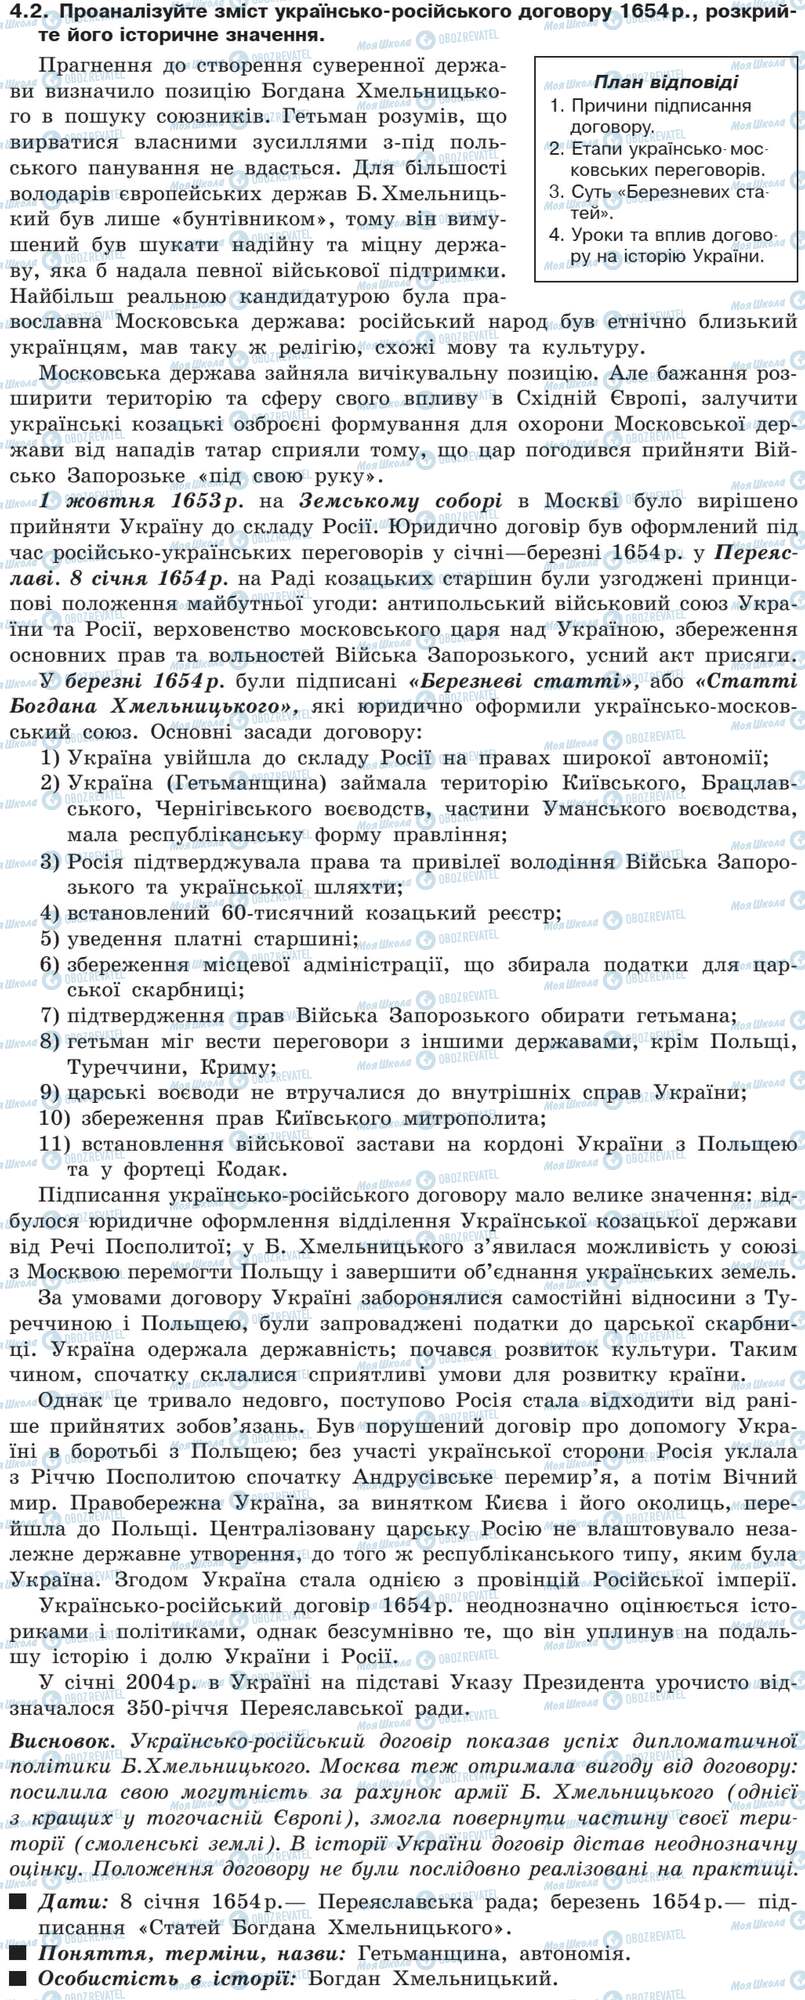 ДПА Історія України 9 клас сторінка 4.2